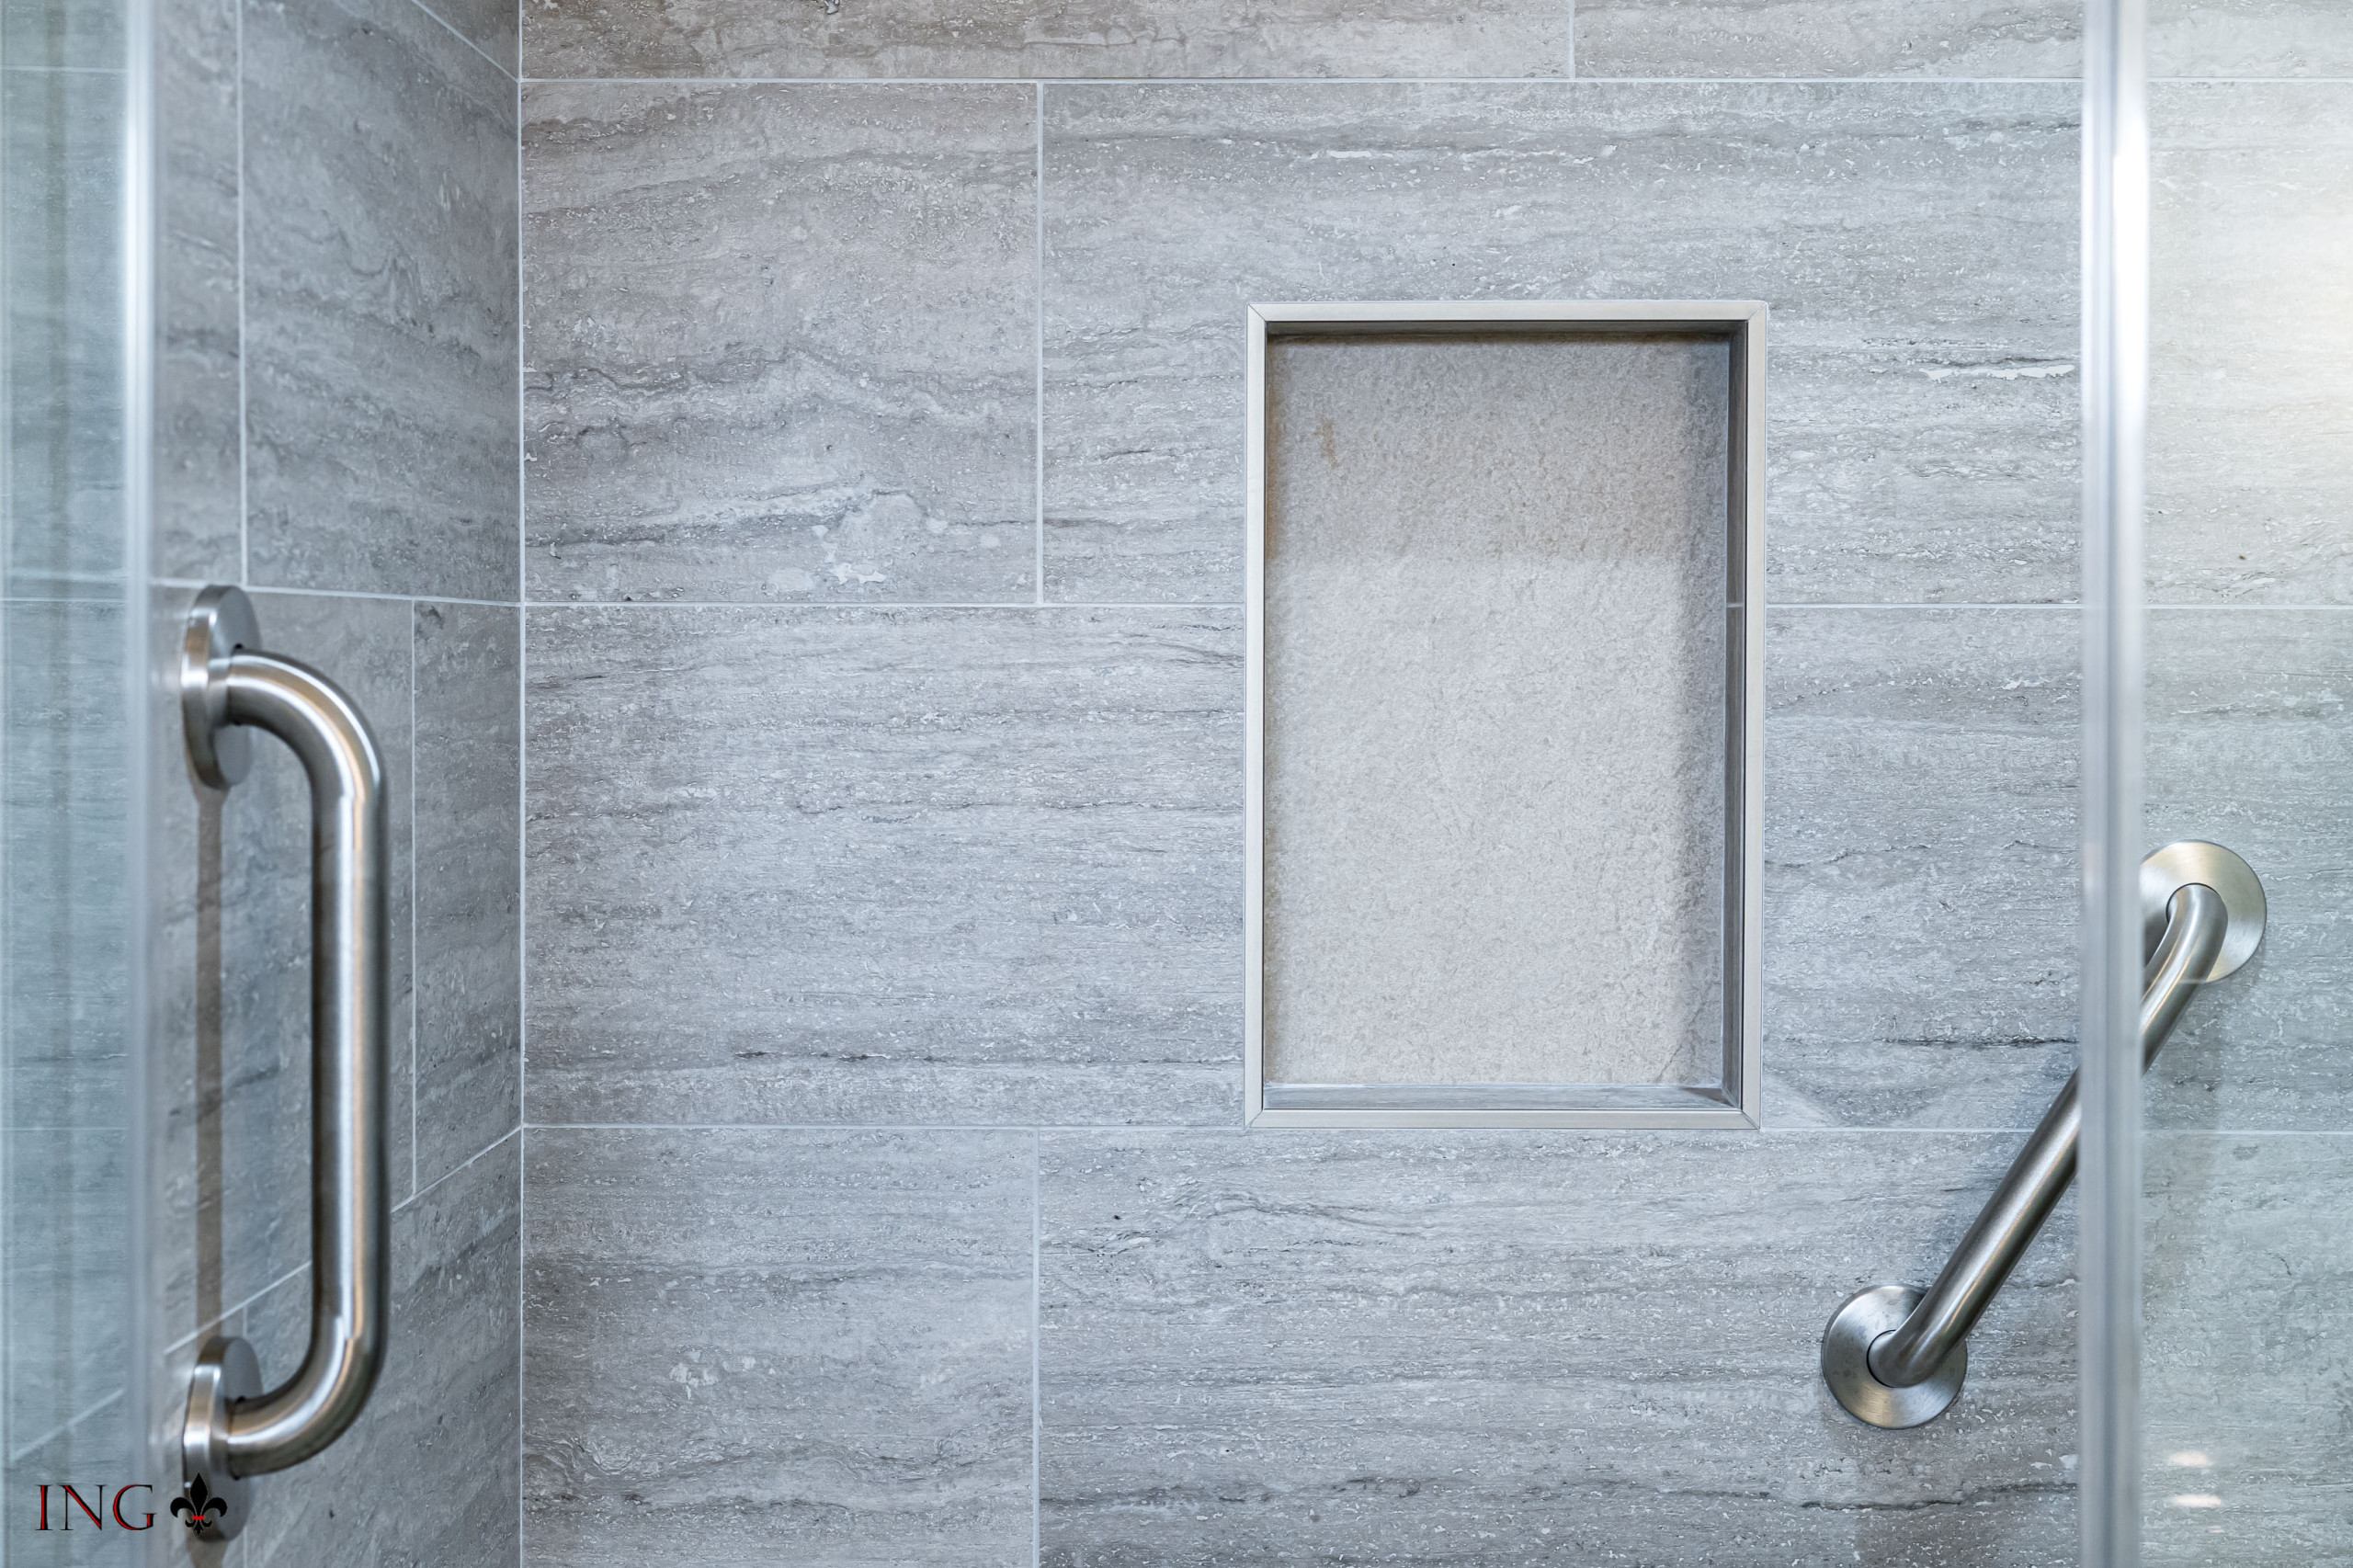 Shower Tile & Enclosure; Fixtures & Faucets